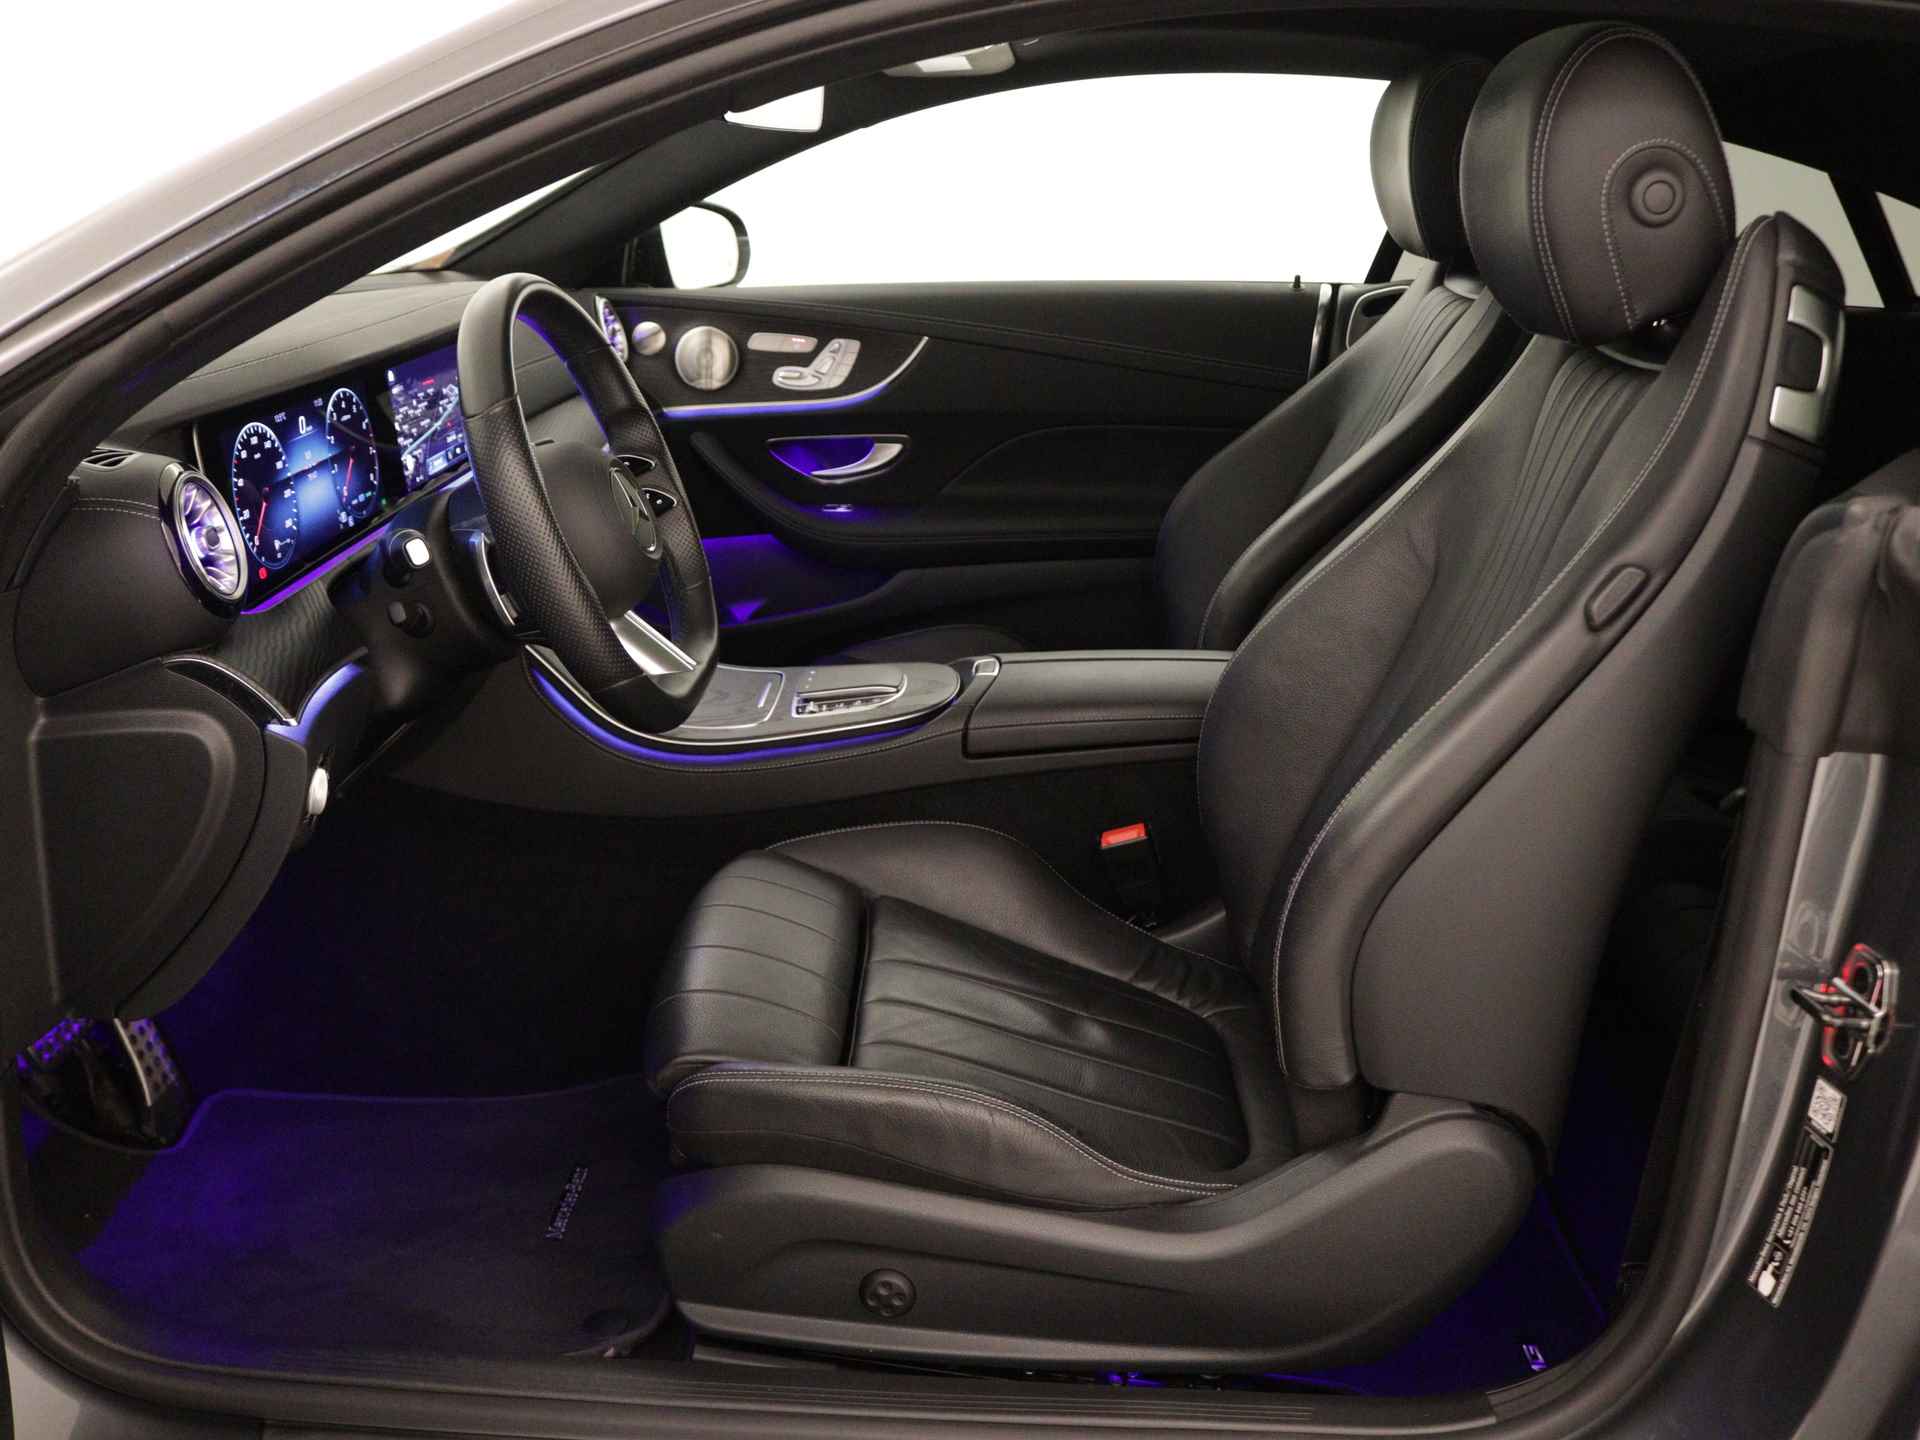 Mercedes-Benz E-Klasse 200 AMG Line | Multi spaaks lichtmetalen velgen | Panoramadak | Burmester | Memory Seats | 360 Camera | Navigatie | wide screen | Inclusief 24 maanden Mercedes-Benz Certified garantie voor Europa. - 20/45